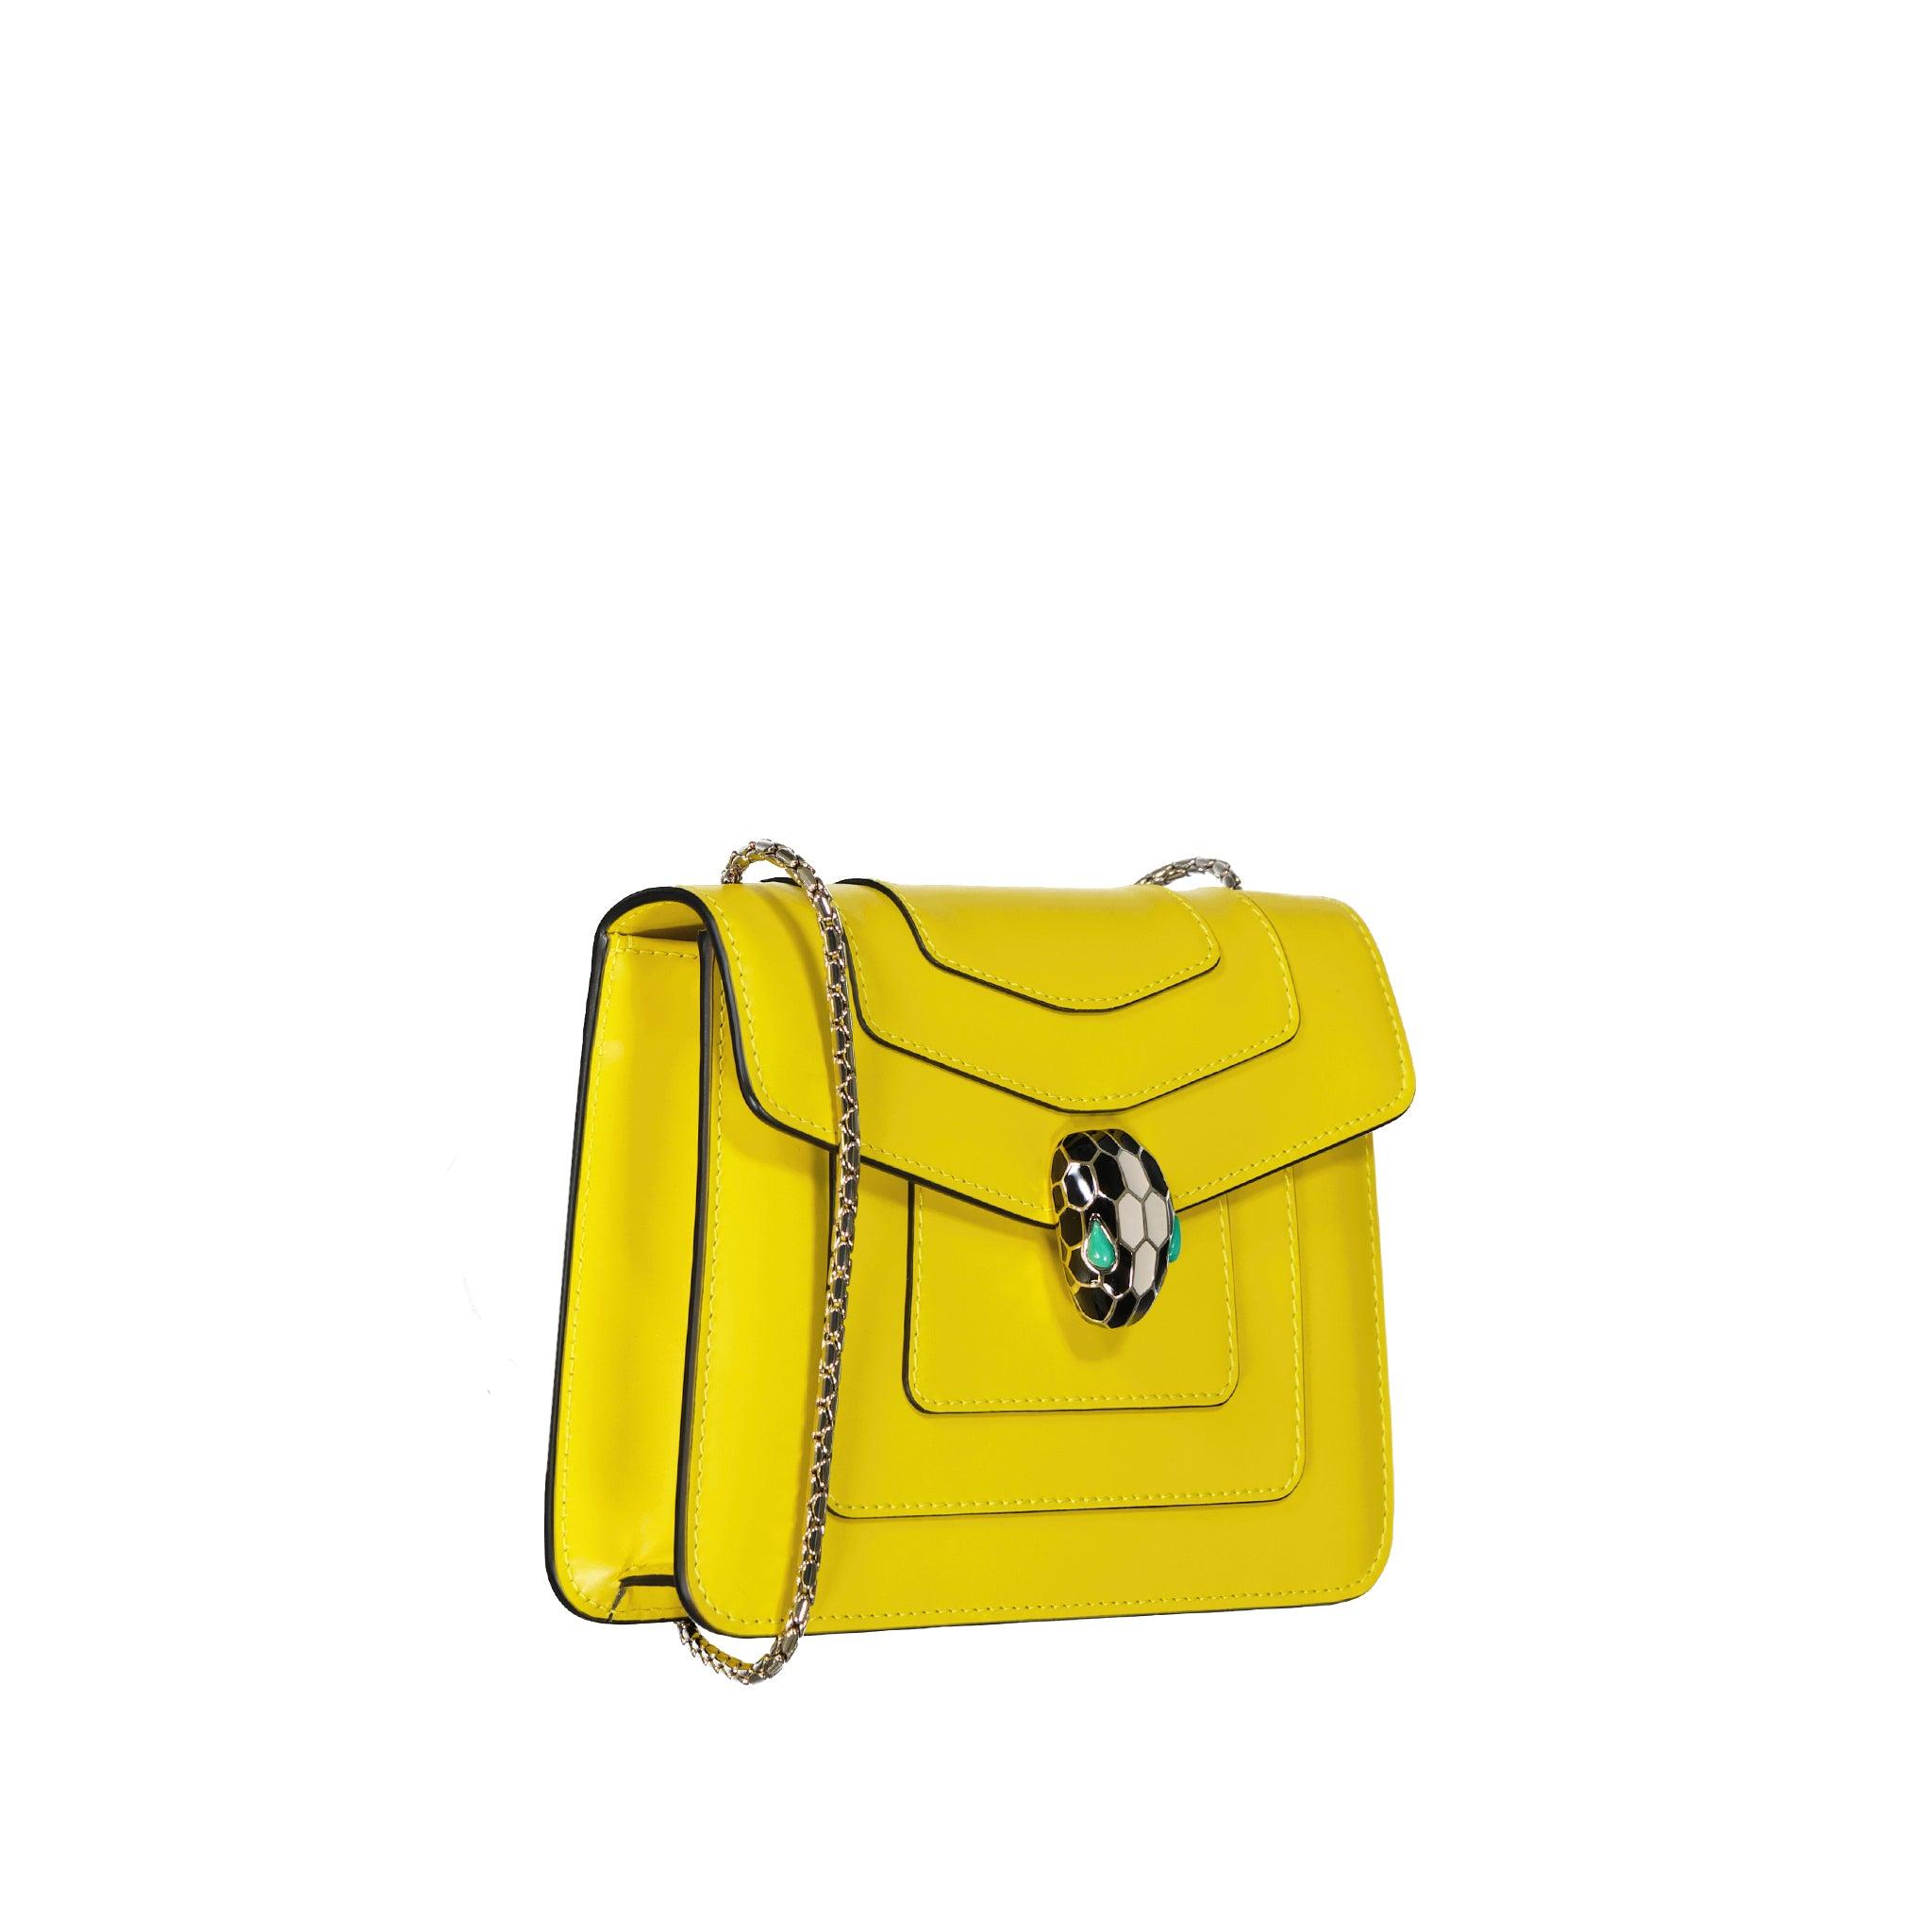 BVLGARI Serpenti Forever Mini Bag in Yellow